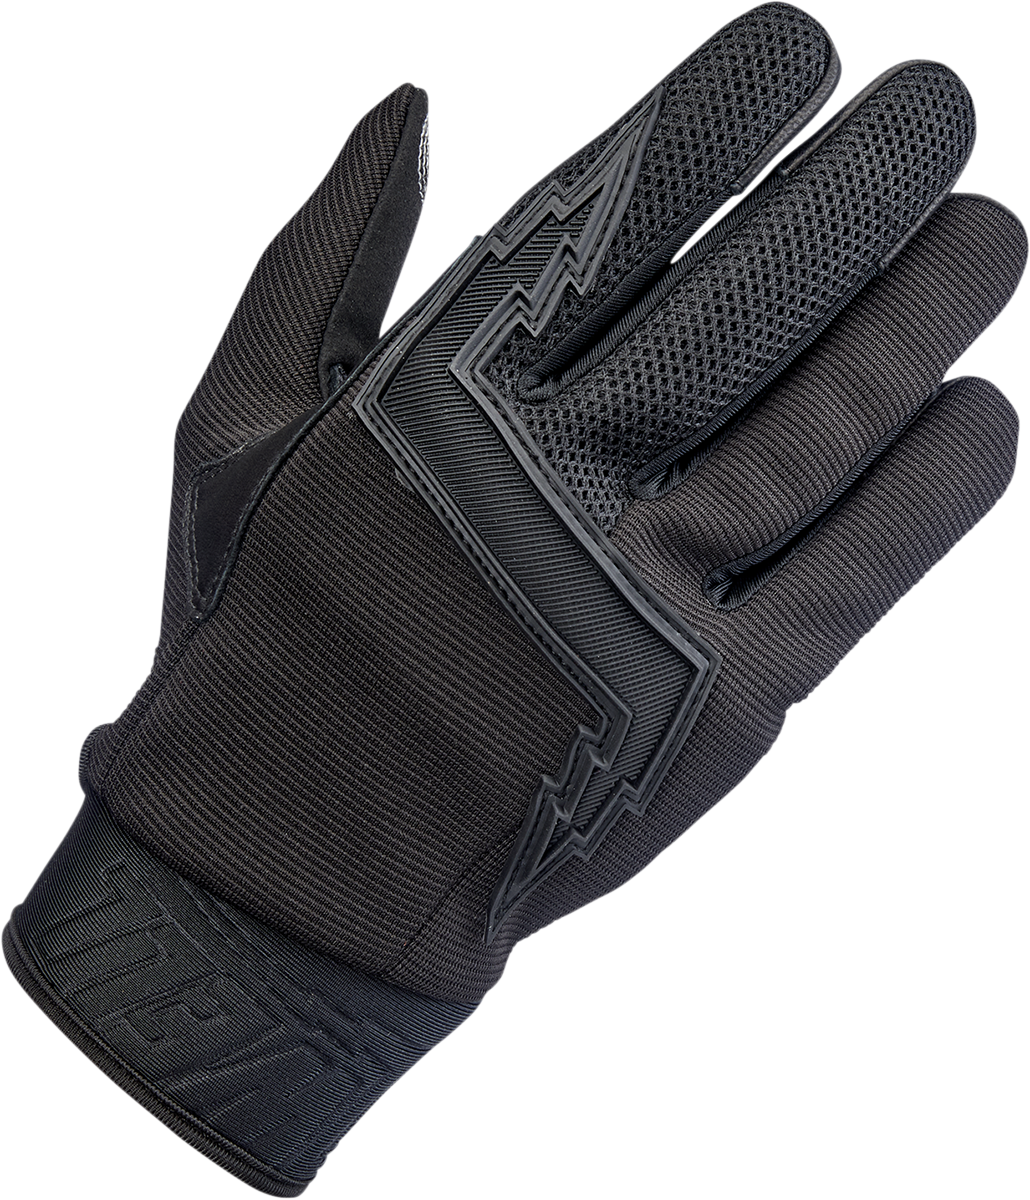 BILTWELL Baja Gloves - Black Out - Large 1508-0101-304